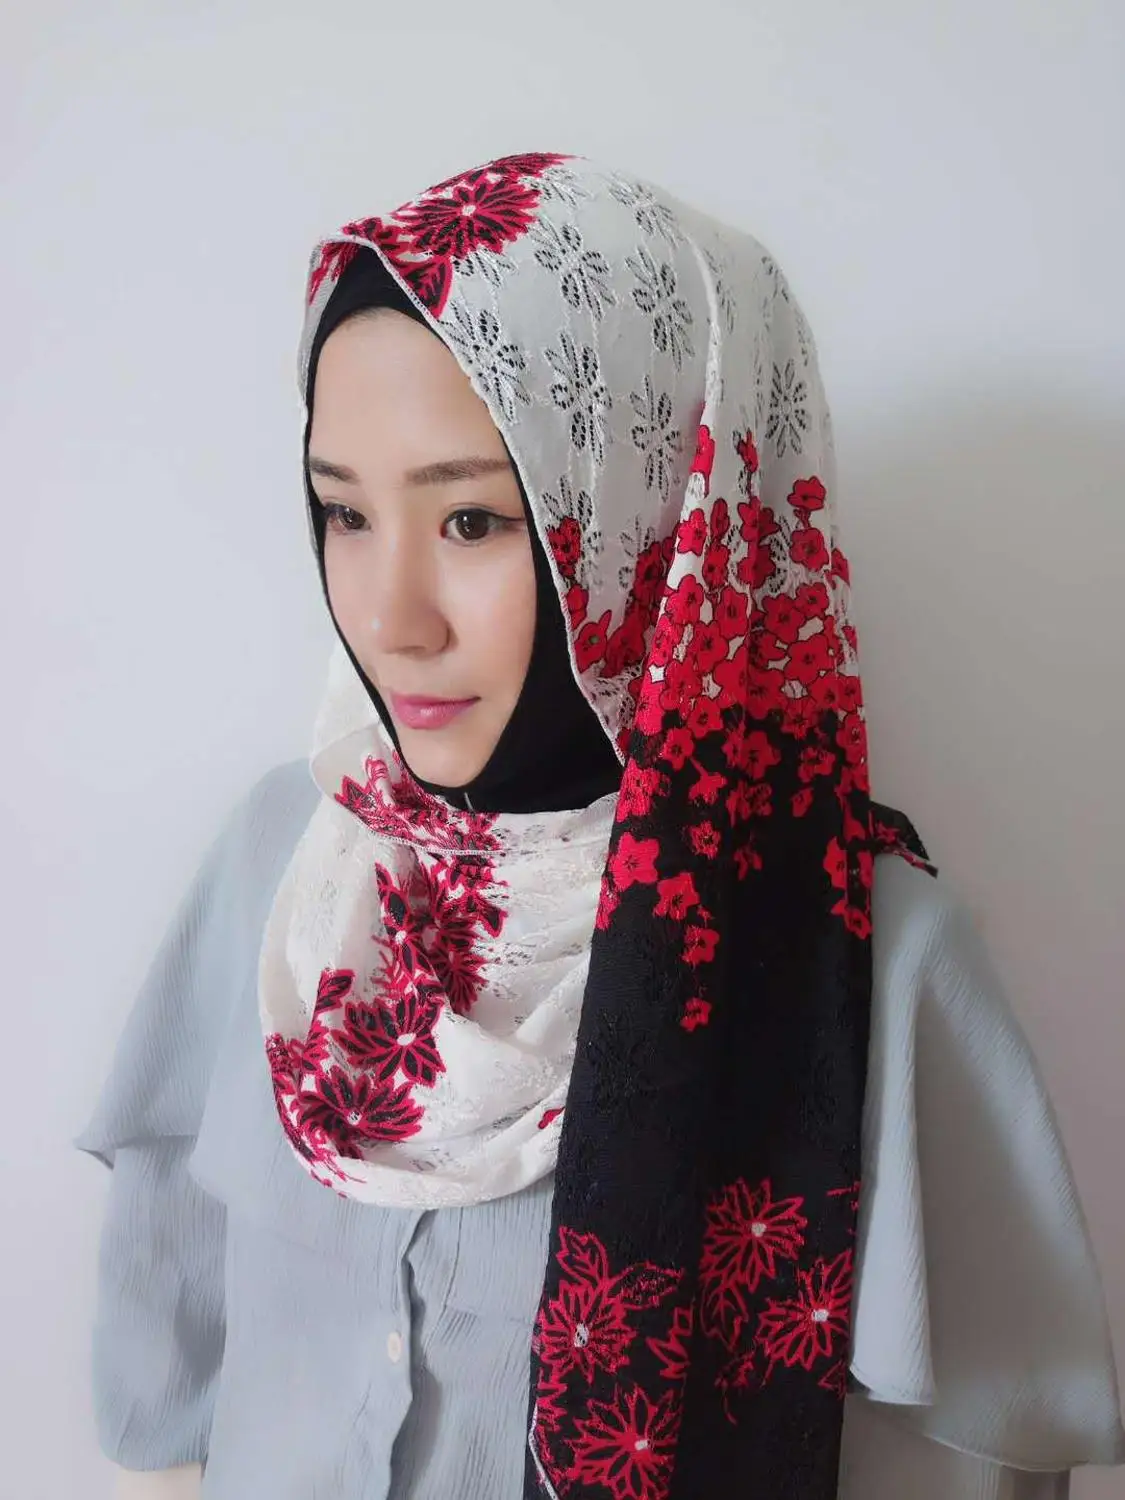 Мусульманские женские кружева печати шарф на голову исламский бисером арабский хиджаб головной убор хиджаб шапка Femme по низким ценам с